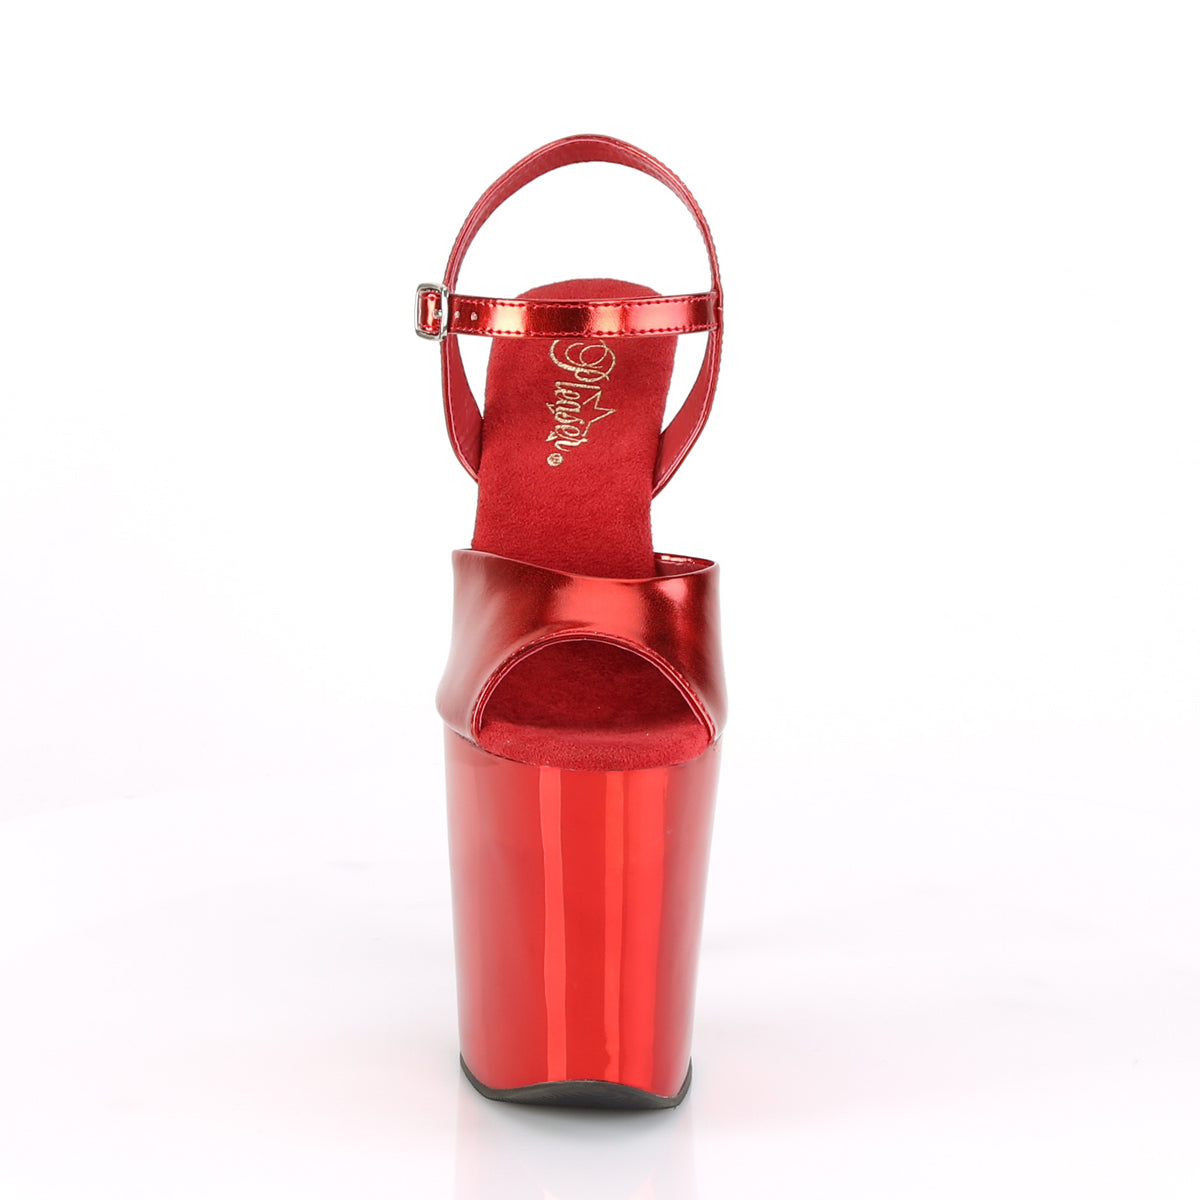 Pleaser Sandali da donna XTREME-809TG rosso metallico PU / rosso cromato